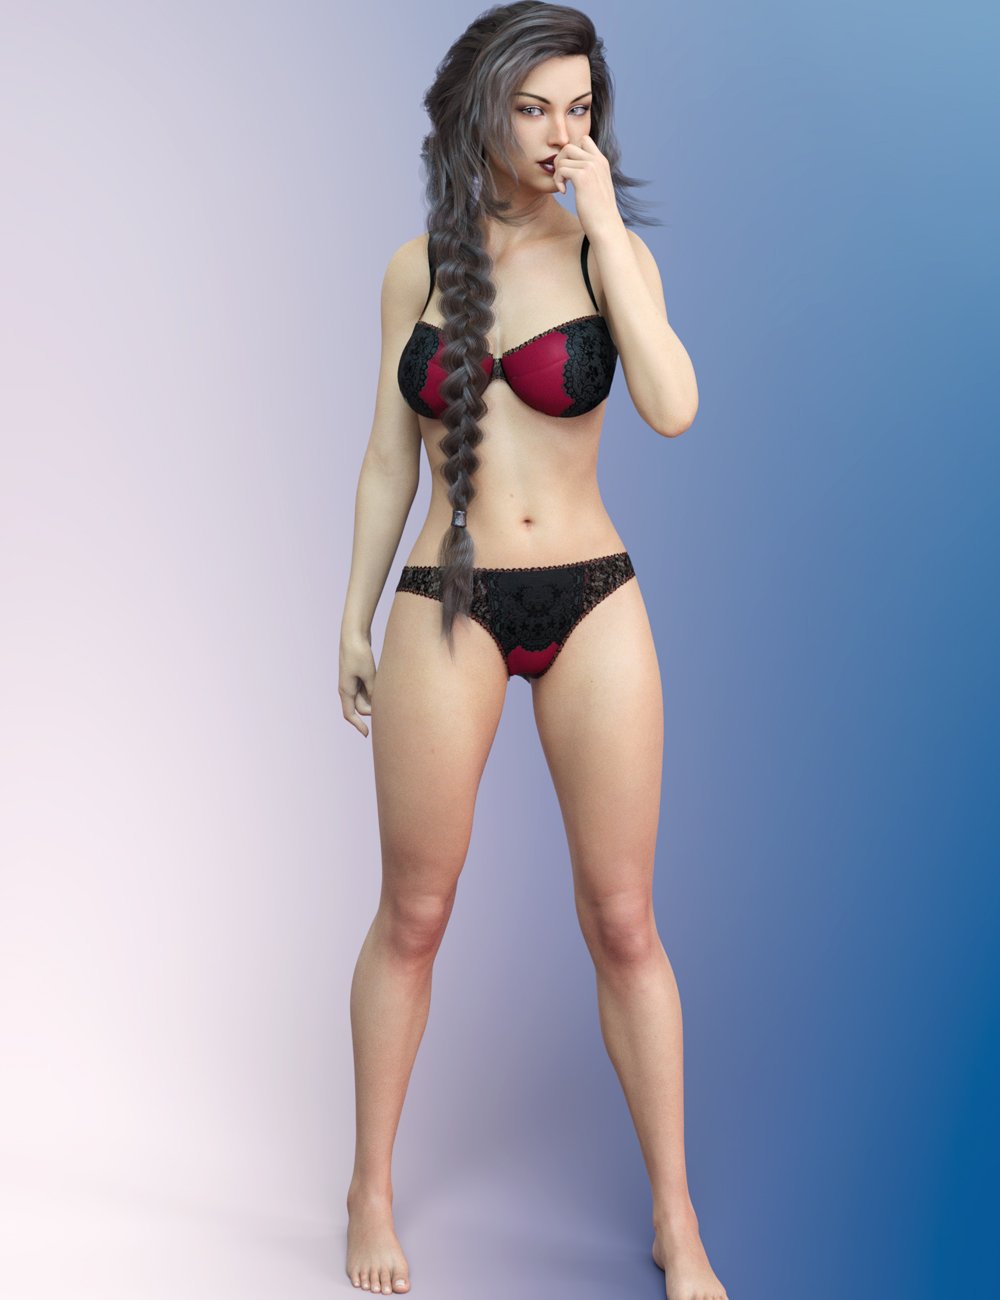 FWSA Elizabeth HD for Victoria 8 by: Fred Winkler ArtSabby, 3D Models by Daz 3D